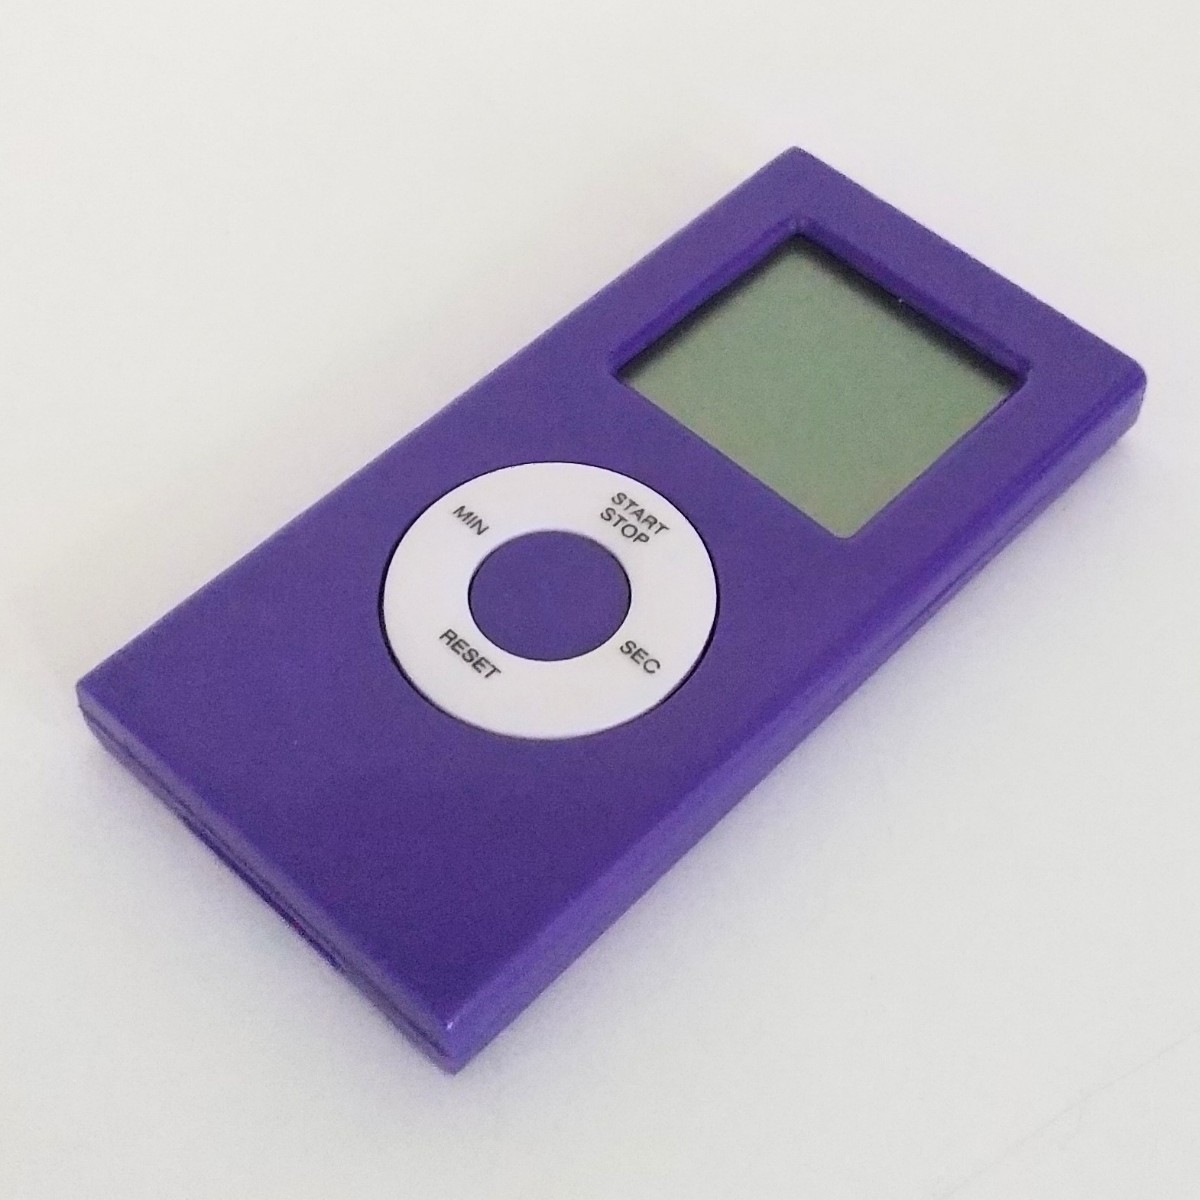 キッチンタイマー iPod風デザイン パープル 紫色 調理 計量ツールタイマー 可愛い スタイリッシュ